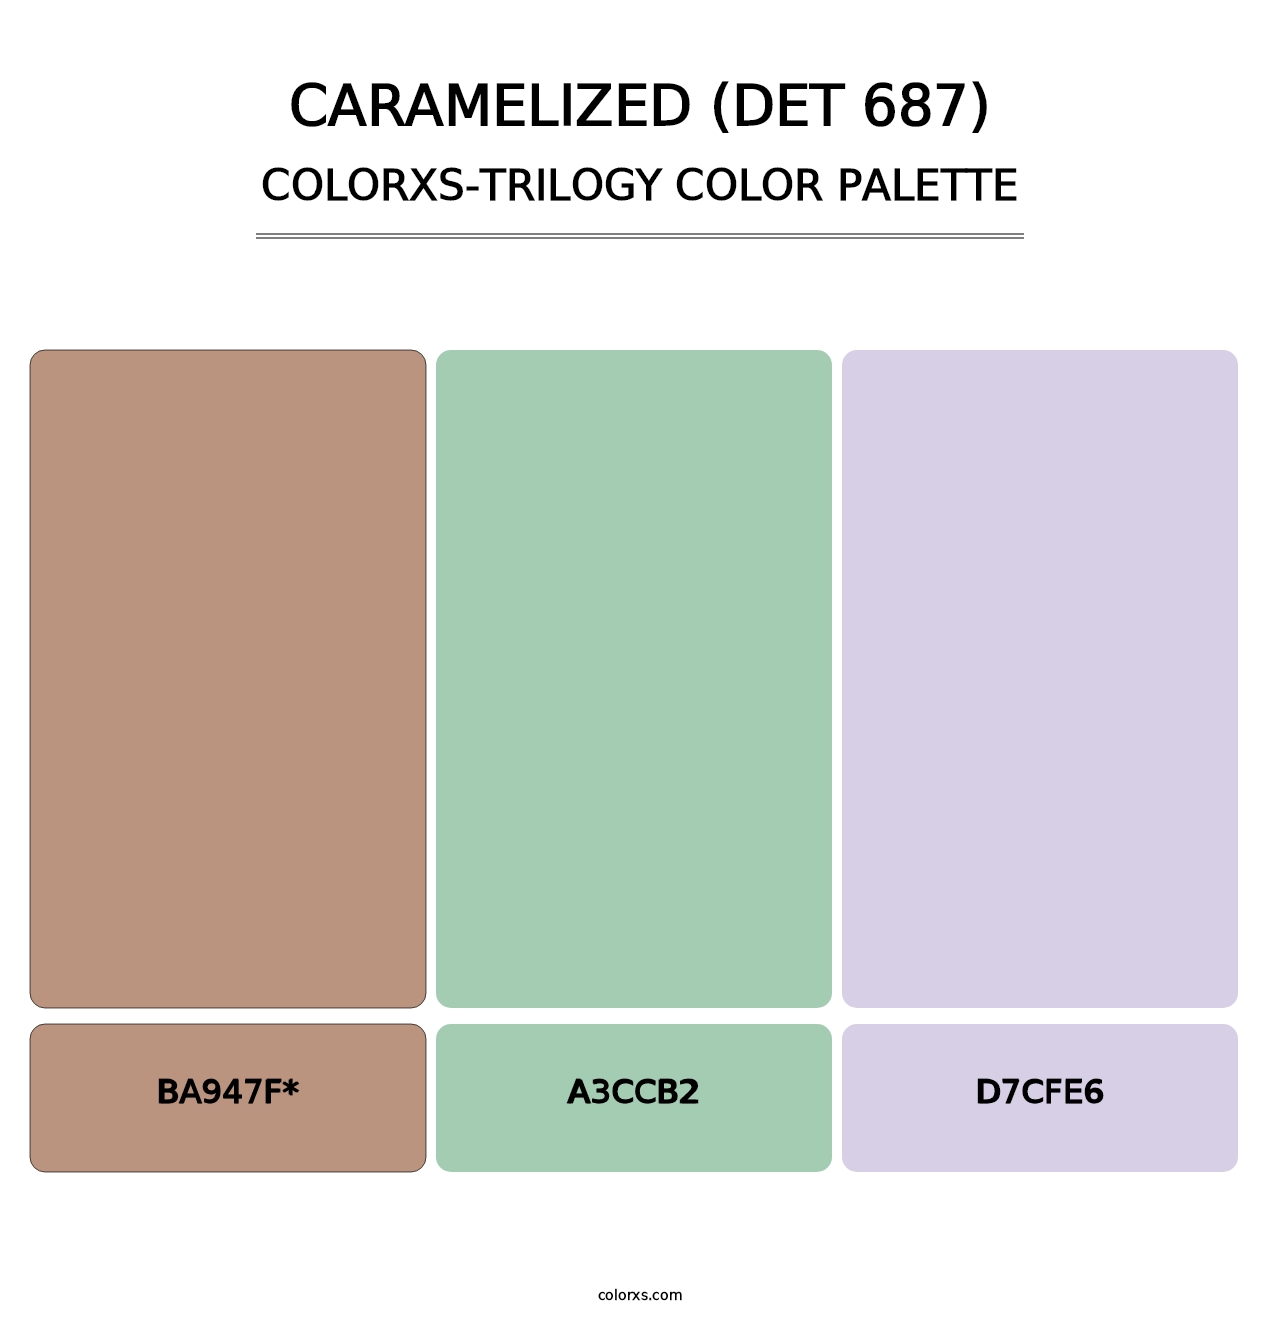 Caramelized (DET 687) - Colorxs Trilogy Palette